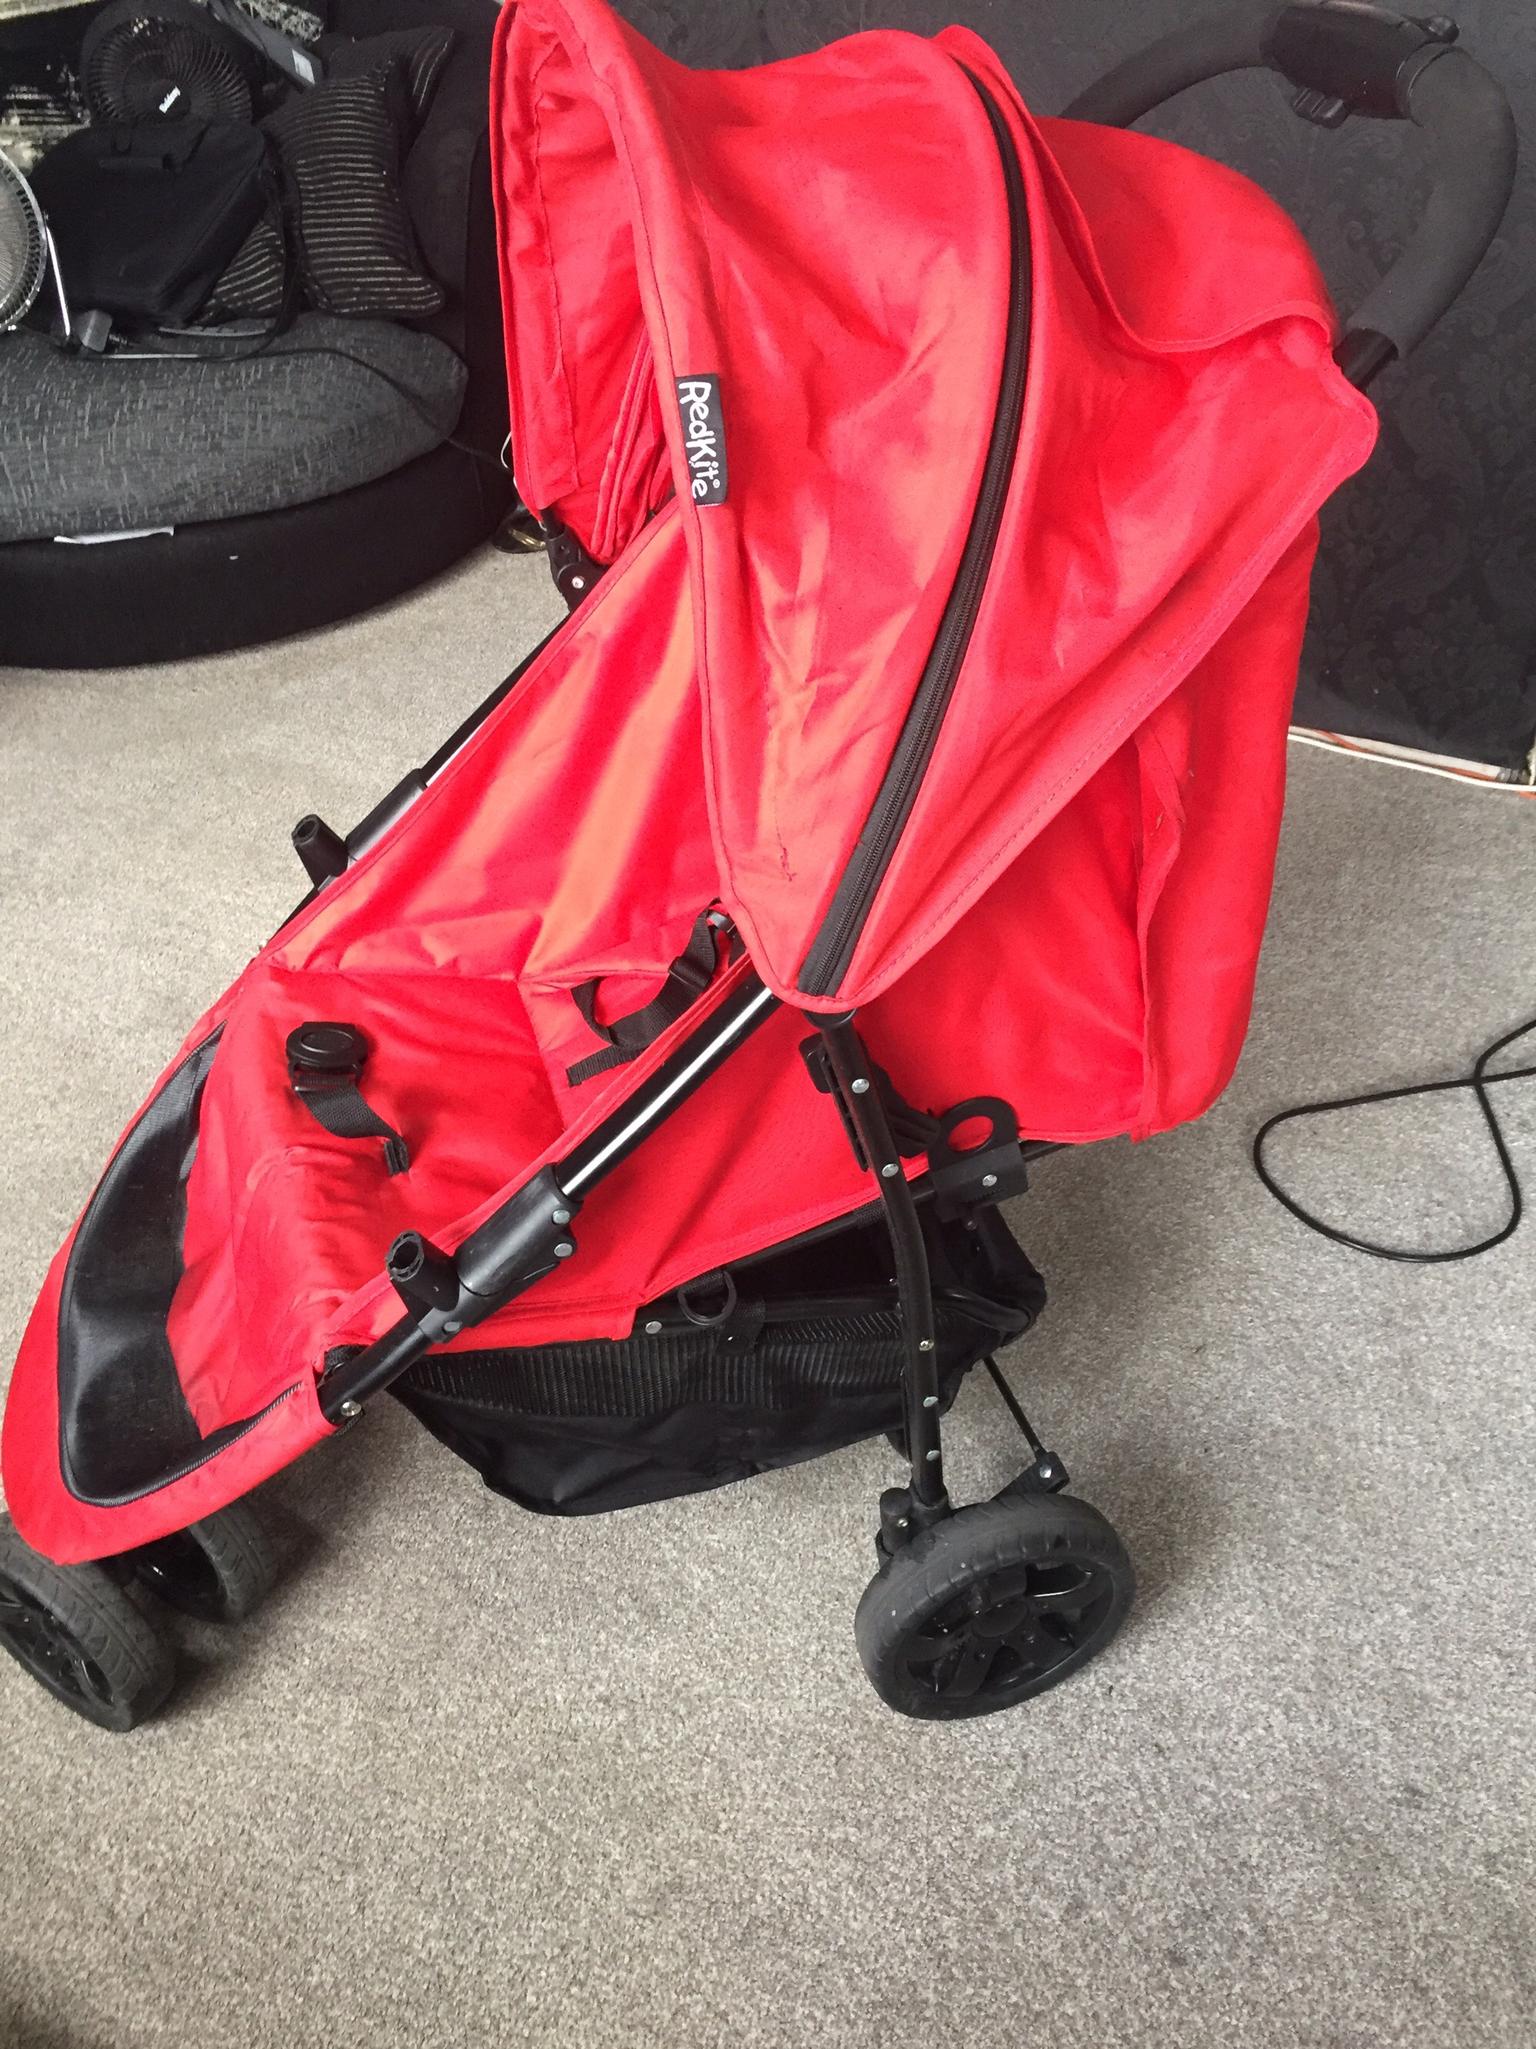 red kite stroller 3 wheeler